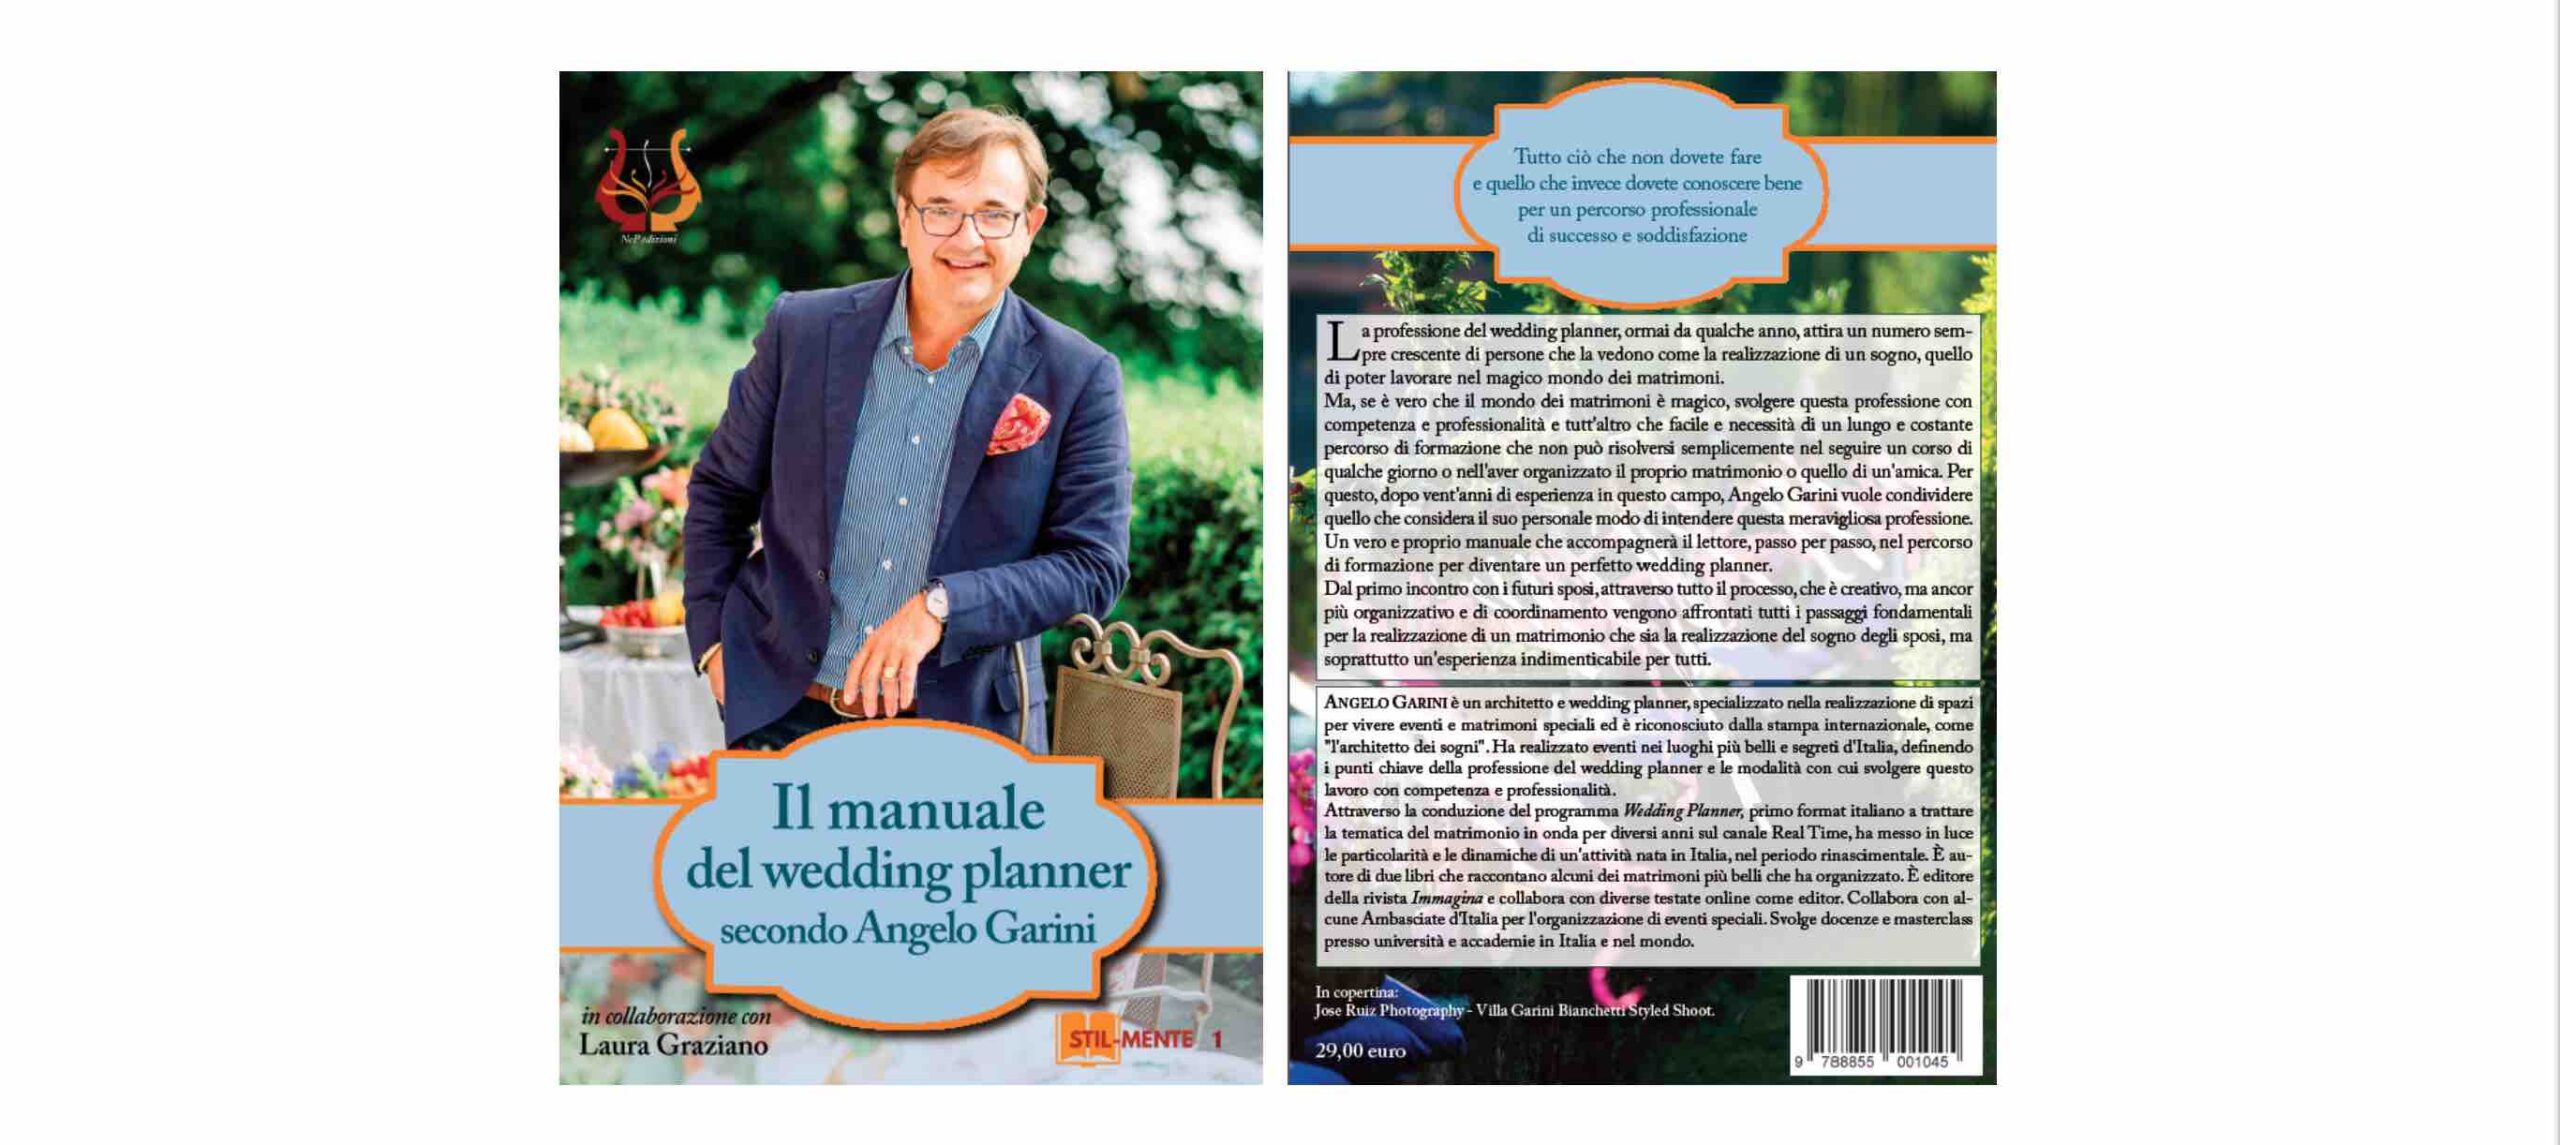 Guida completa alla realizzazione dell’evento perfetto – Il testo sacro del Wedding Planner, secondo Angelo Garini